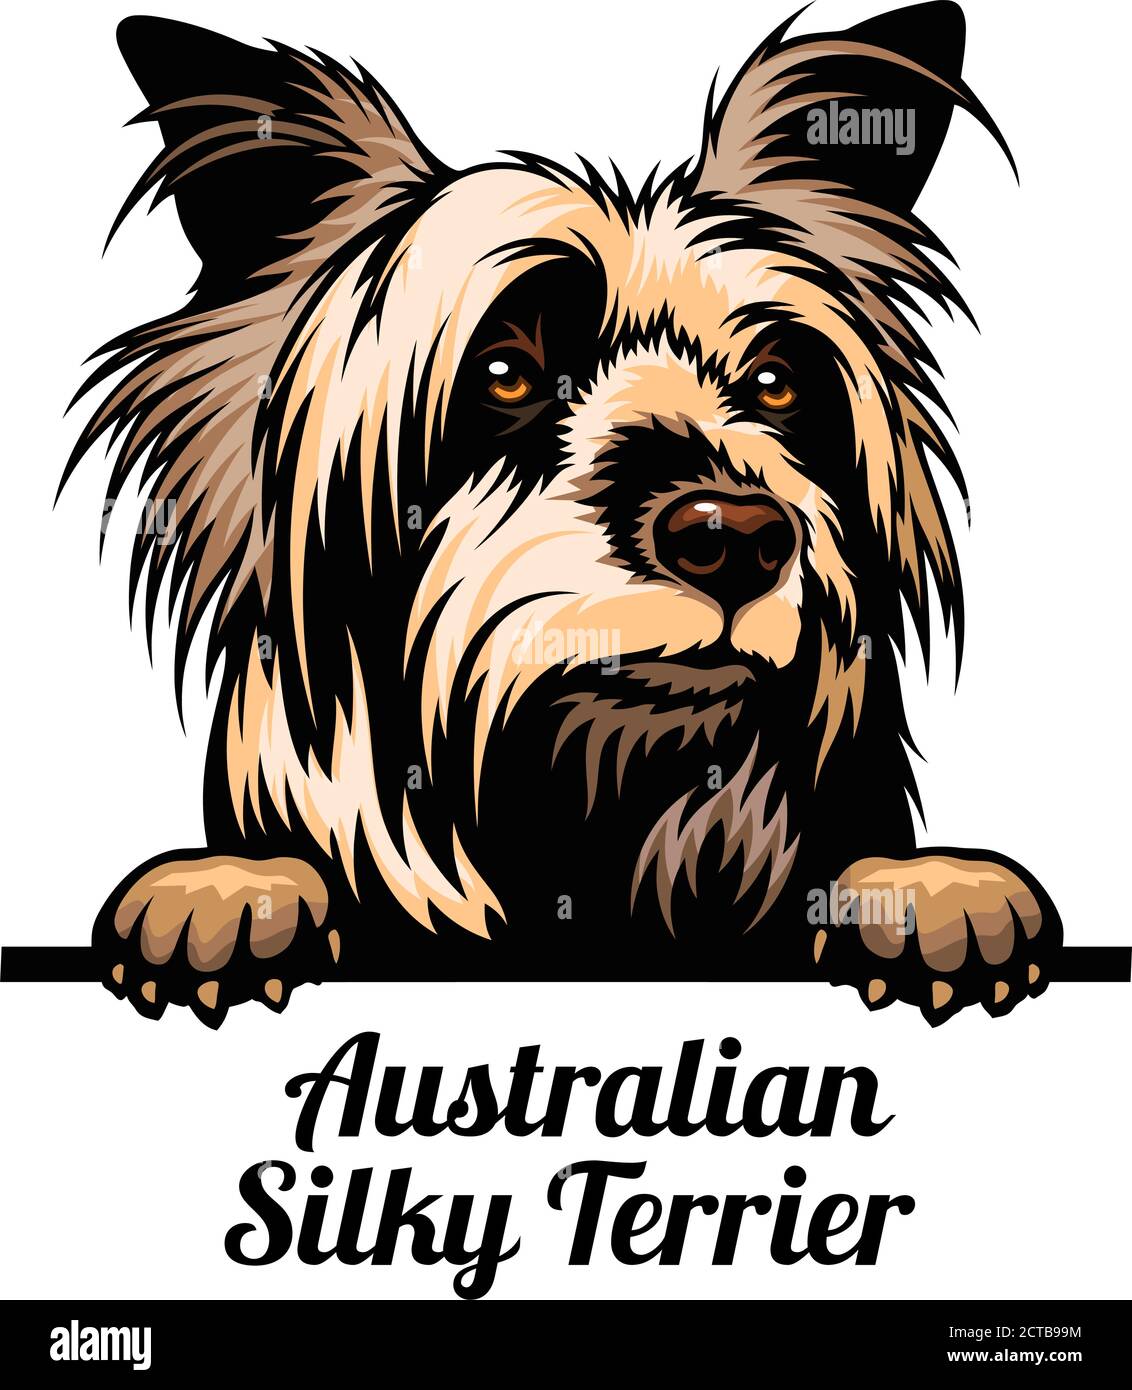 Cane da peeking - Australian Silky Terrier - razza di cane. Immagine a colori di una testa di cani isolata su uno sfondo bianco Illustrazione Vettoriale